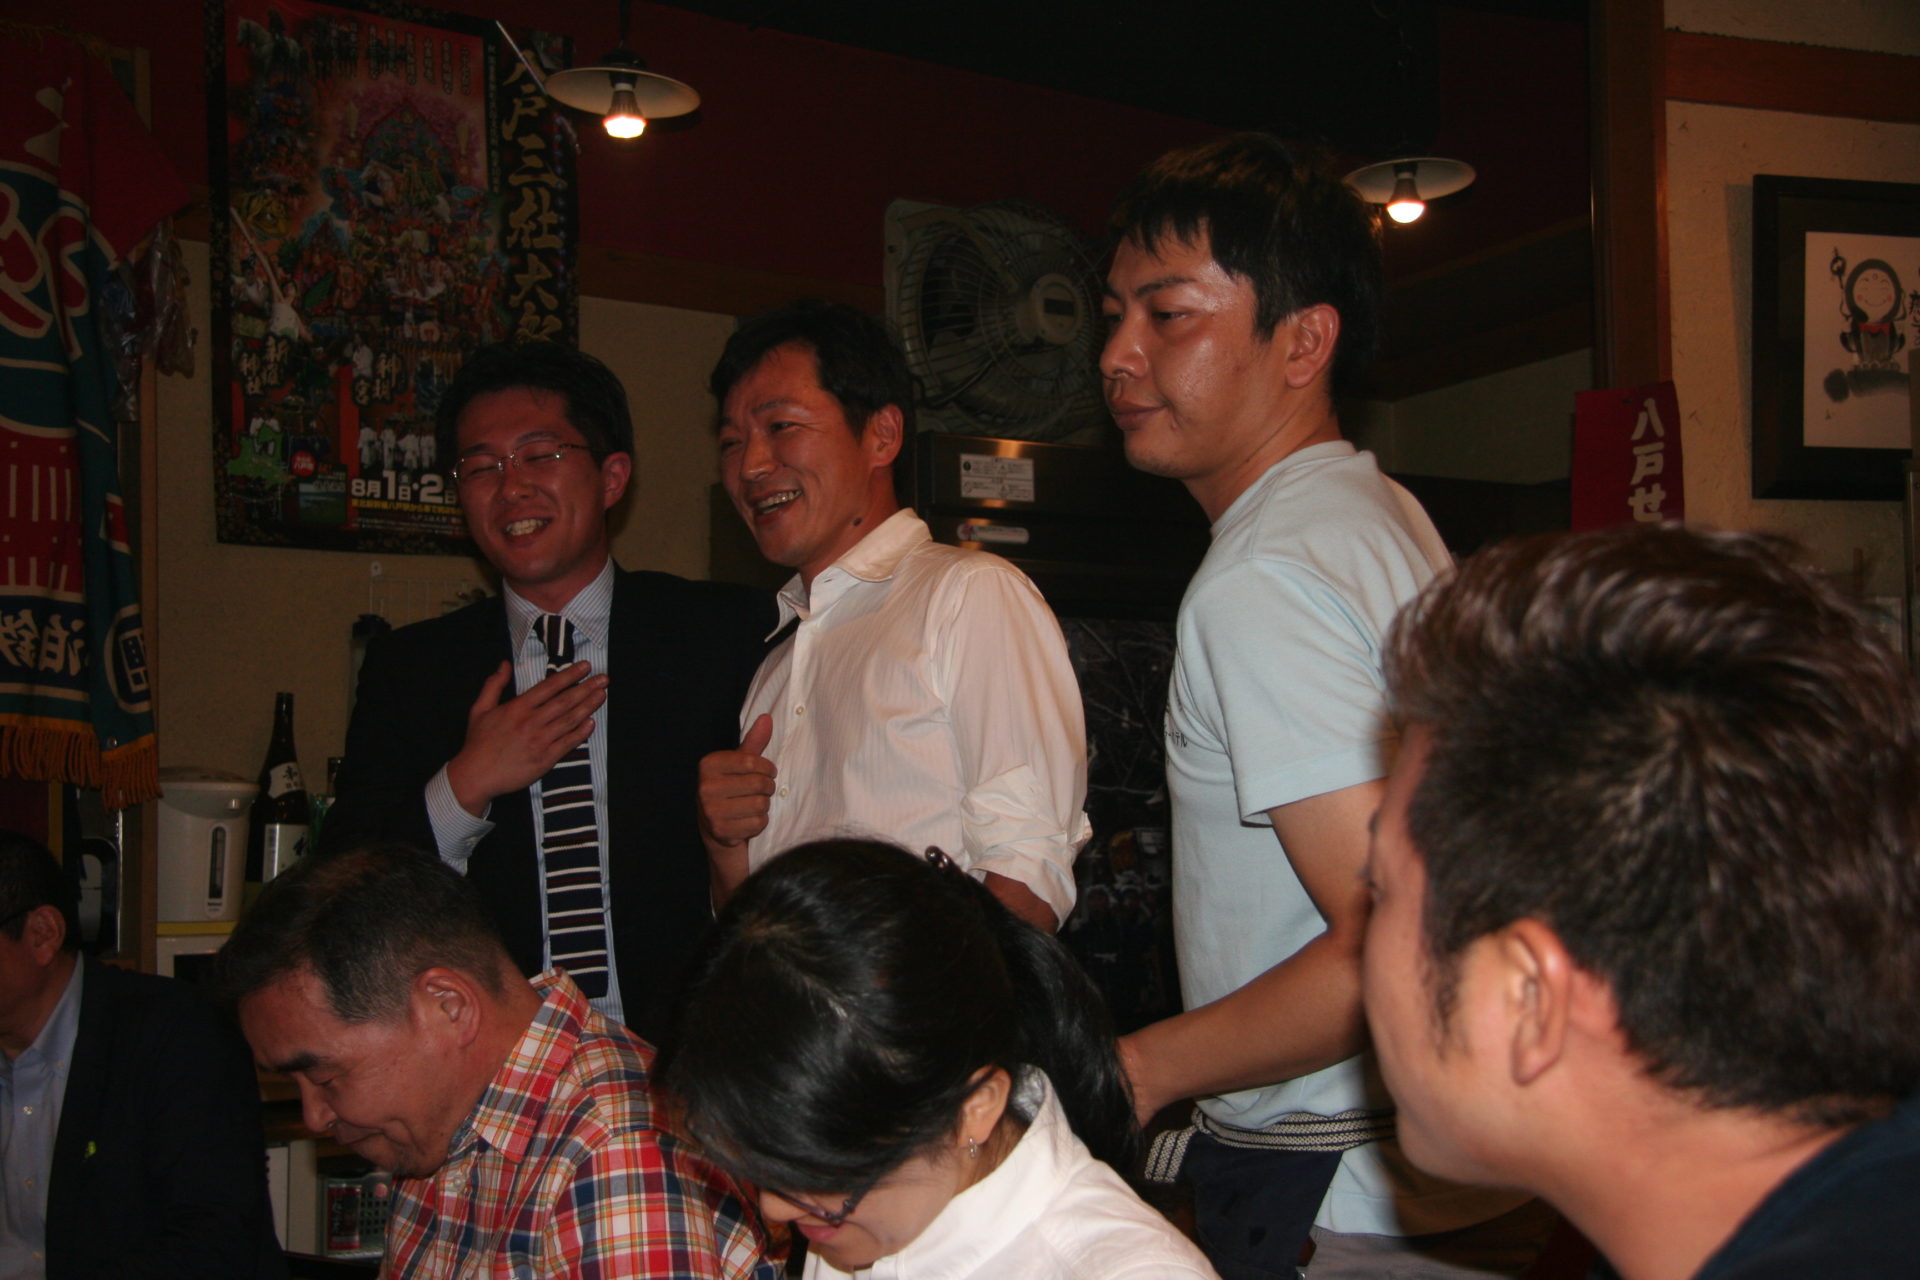 IMG 8950 1 1920x1280 - 2015年6月15日 AOsuki定例飲み会開催しました。